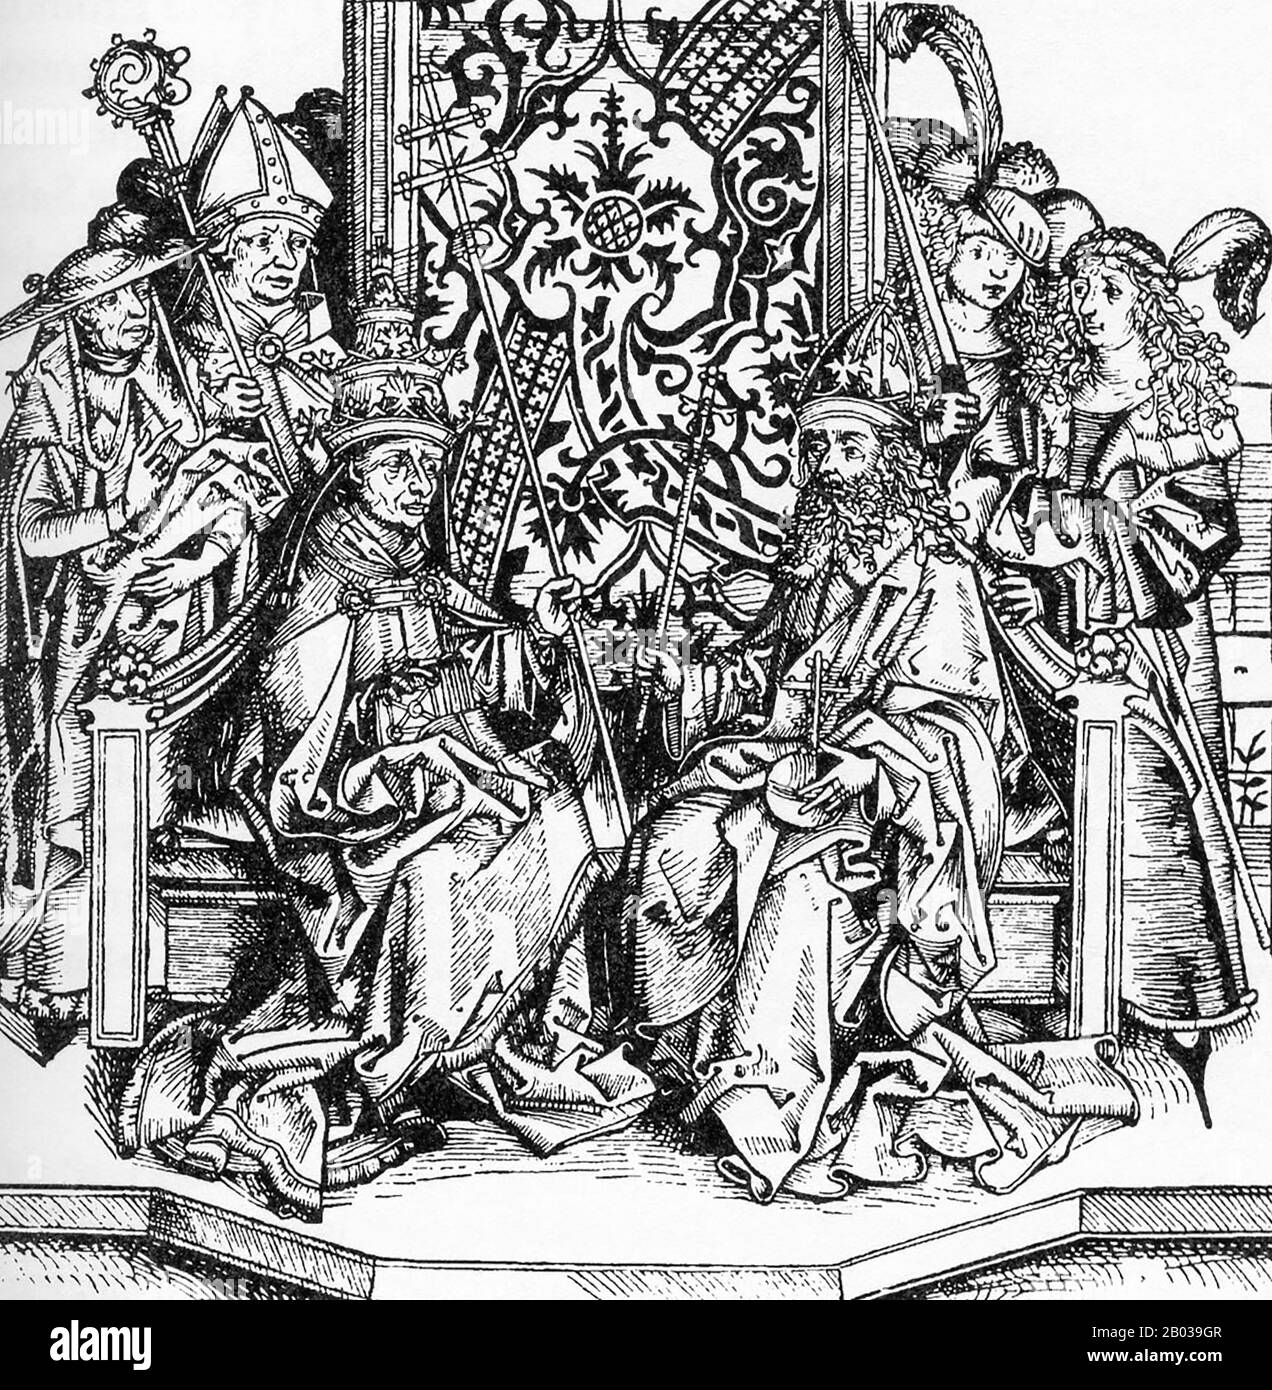 Frederick III (1415-1493), aussi connu sous le nom de Frederick The Fat et Frederick The Paisible, était le fils aîné du duc autrichien intérieur Ernest The Iron, membre de la dynastie des Habsbourg. Il est devenu duke de l'Autriche intérieure en 1424 à l'âge de neuf ans, mais ne lui sera pas accordé la règle jusqu'en 1435, avec son jeune frère Albert affirmant ses droits en tant que co-dirigeant. En 1439, Frederick était devenu le chef incontesté de la dynastie des Habsbourg. Frederick était le cousin de feu le roi Albert II et fut élu roi d'Allemagne en 1440. Il s'est rendu en Italie en 1452 pour être couronné empereur romain Saint. Il était insucces Banque D'Images